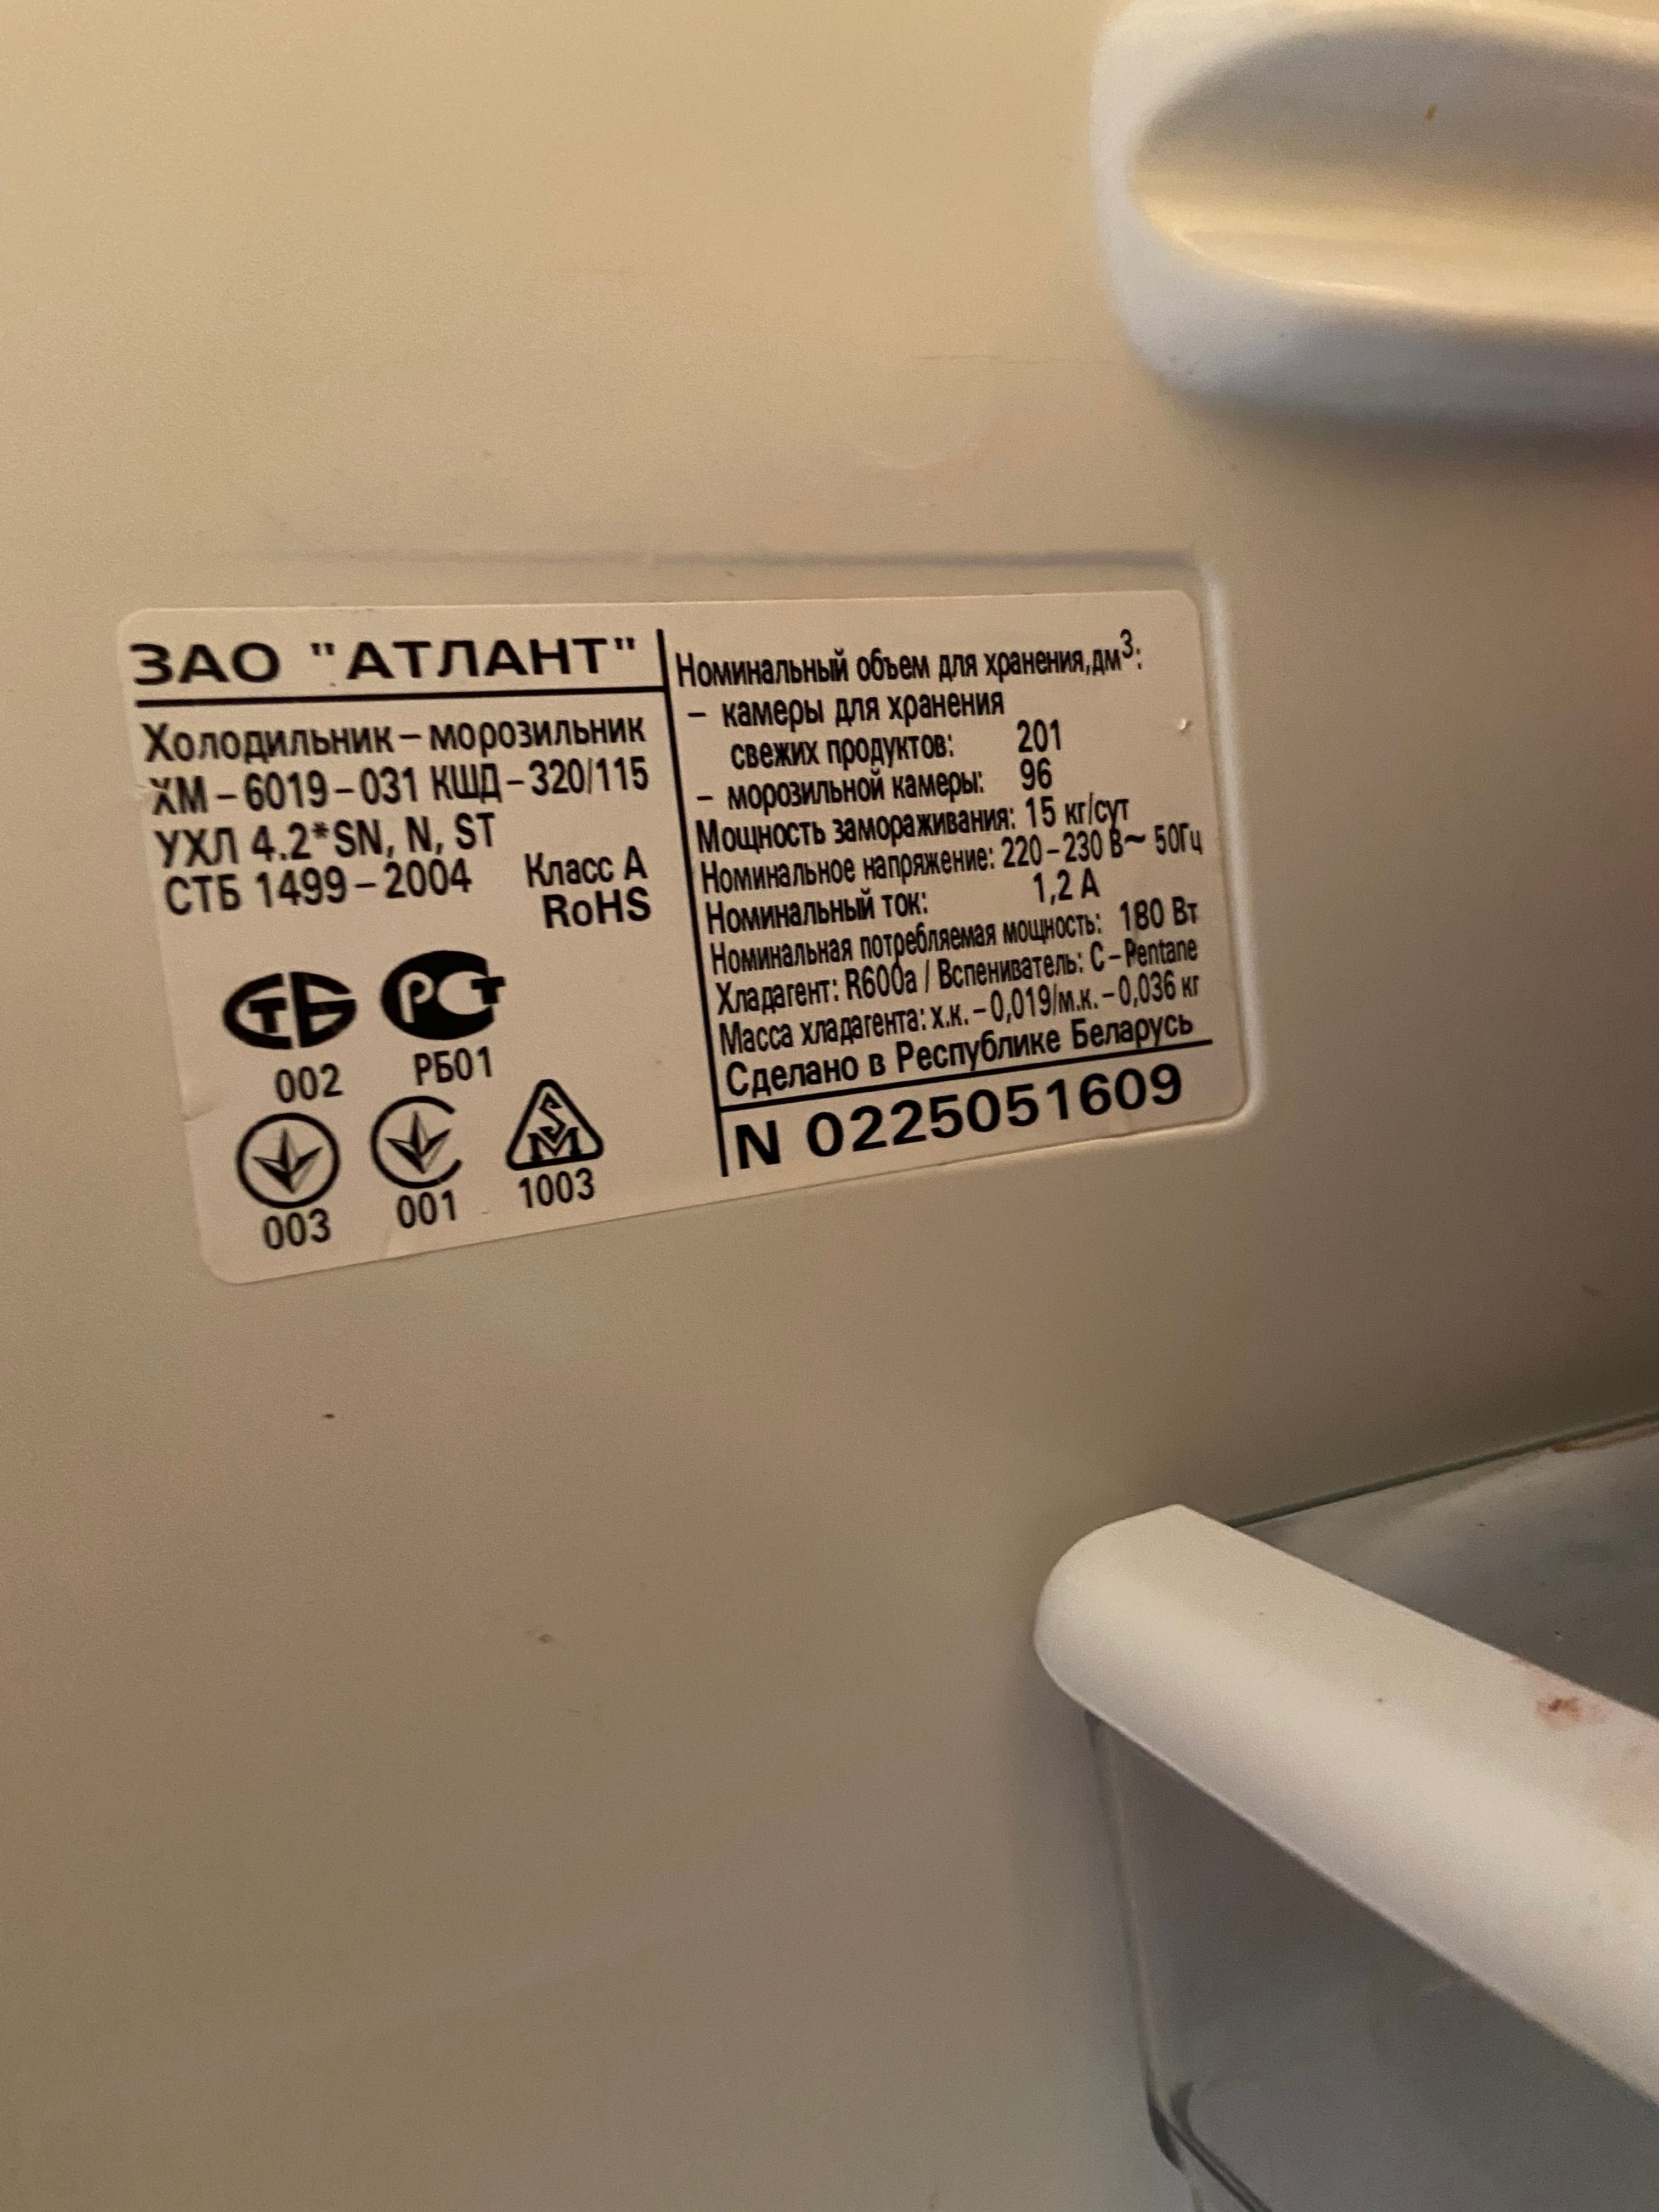 Холодильник Атлант ХМ-619-031